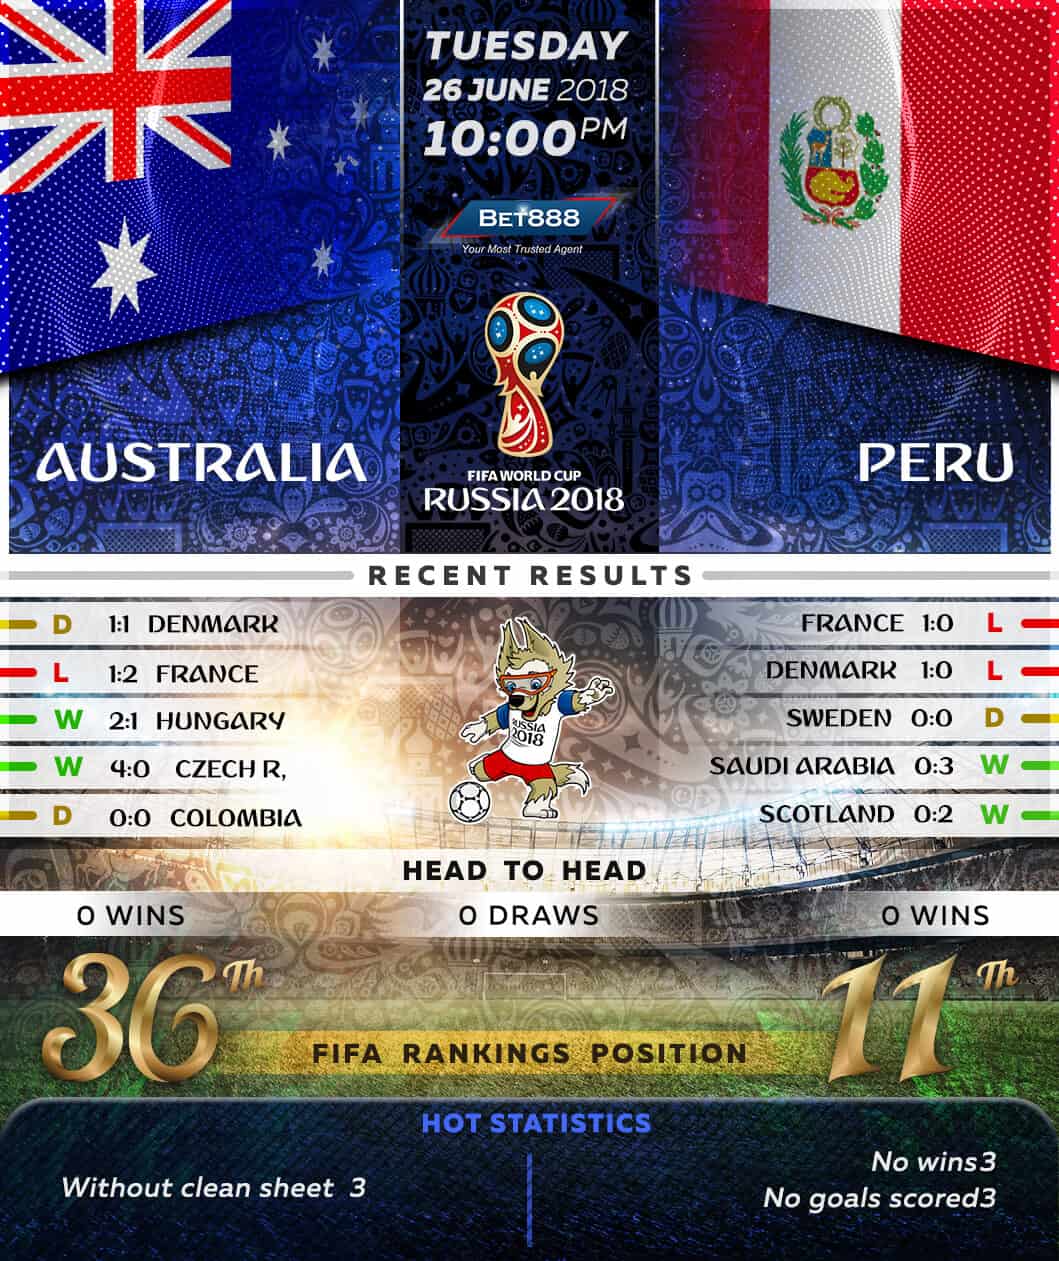 Australia vs Peru 26/06/18